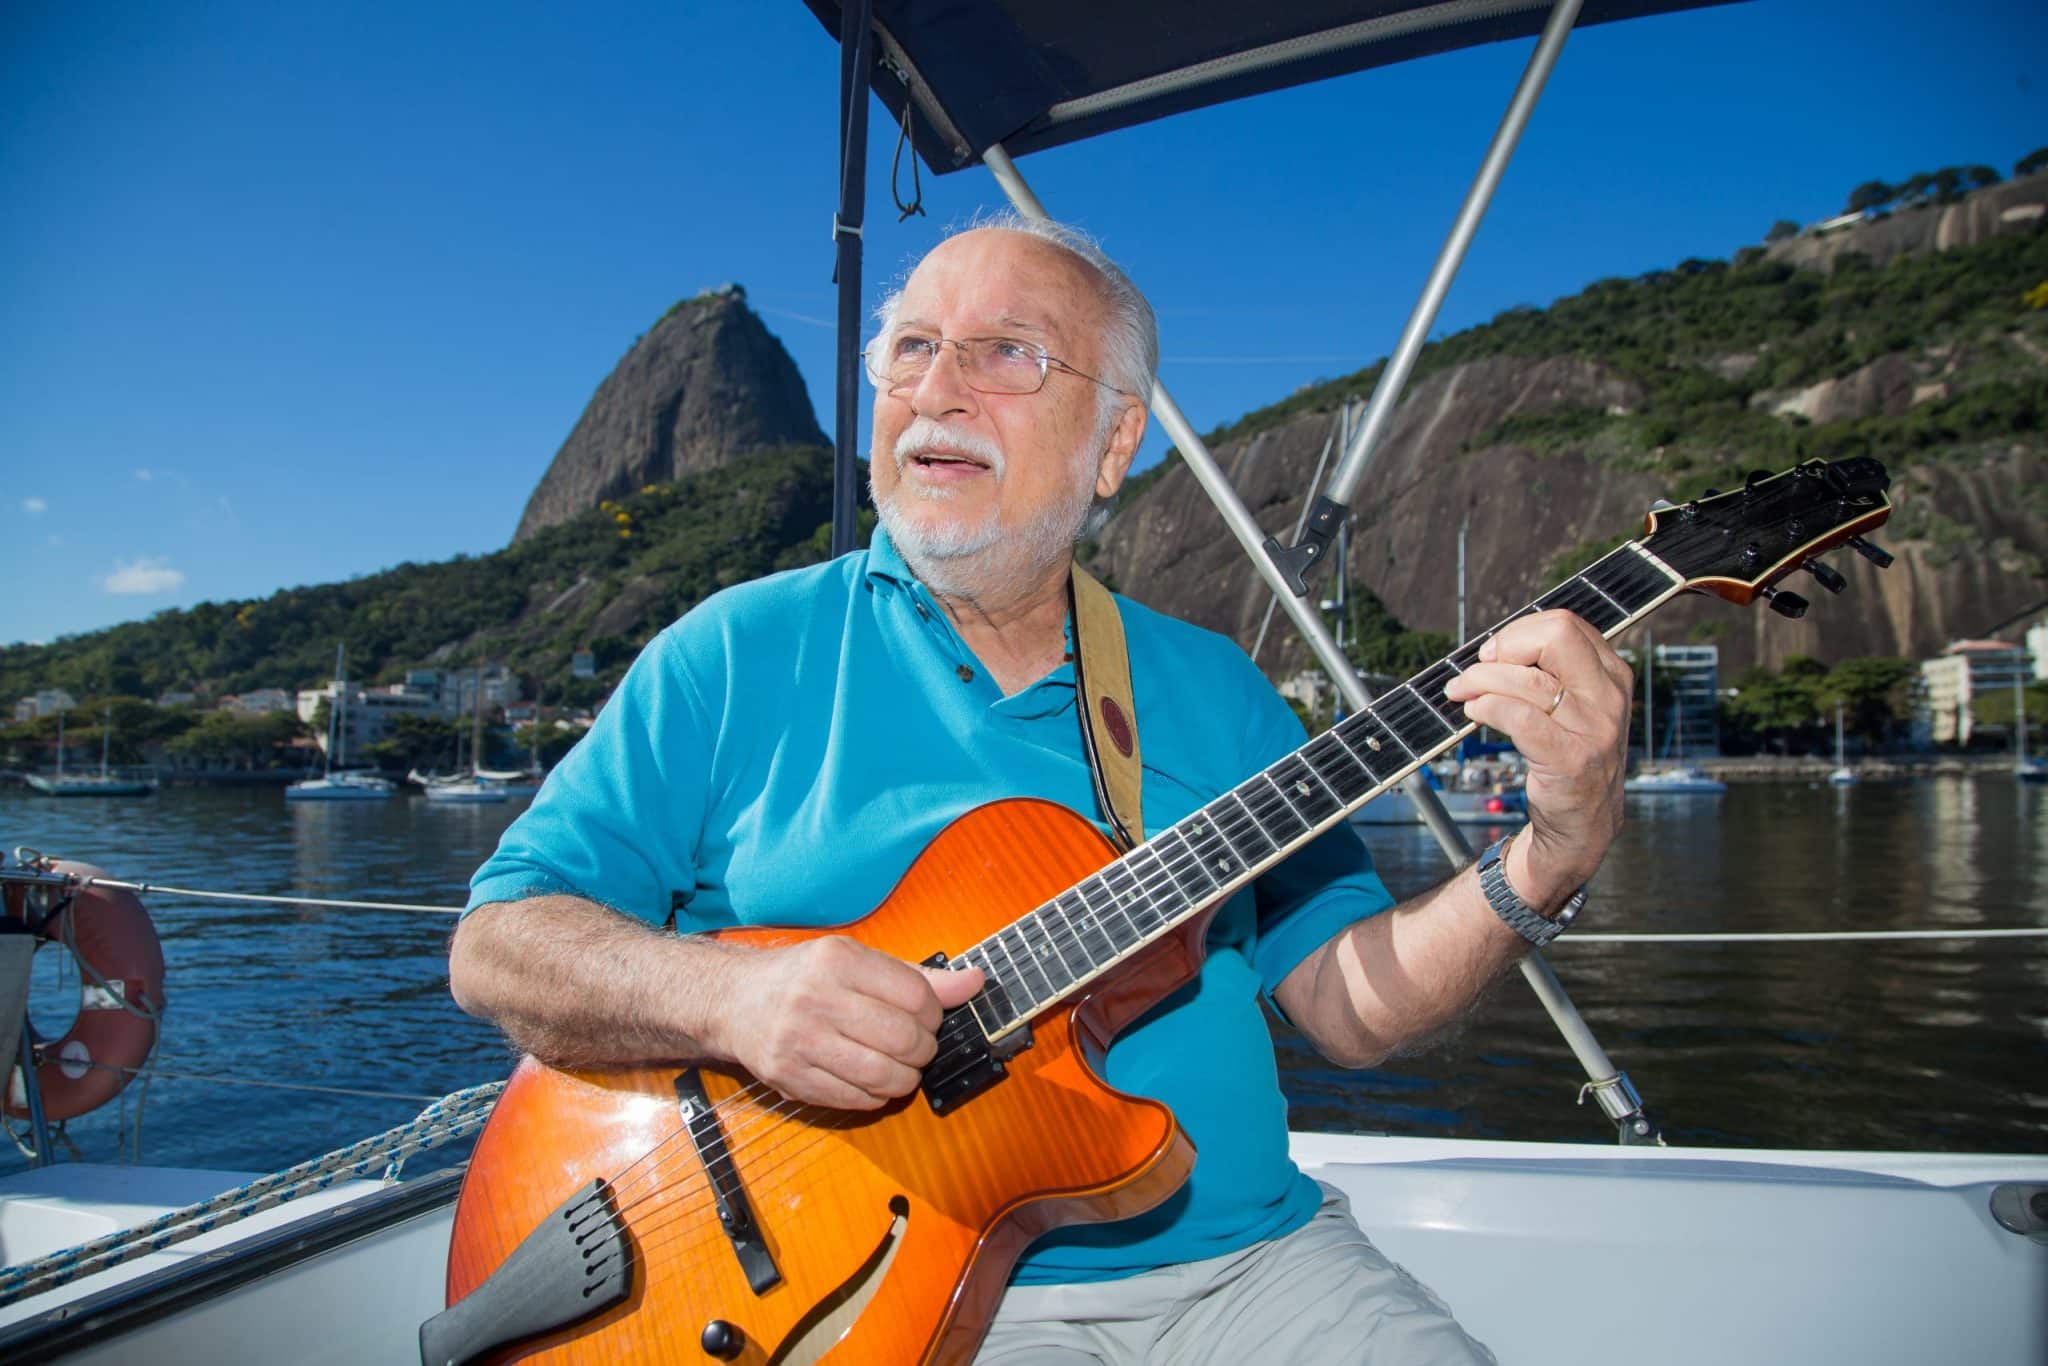 revistaprosaversoearte.com - Roberto Menescal recebe convidadas em show que celebra a Bossa Nova e o Rio de Janeiro